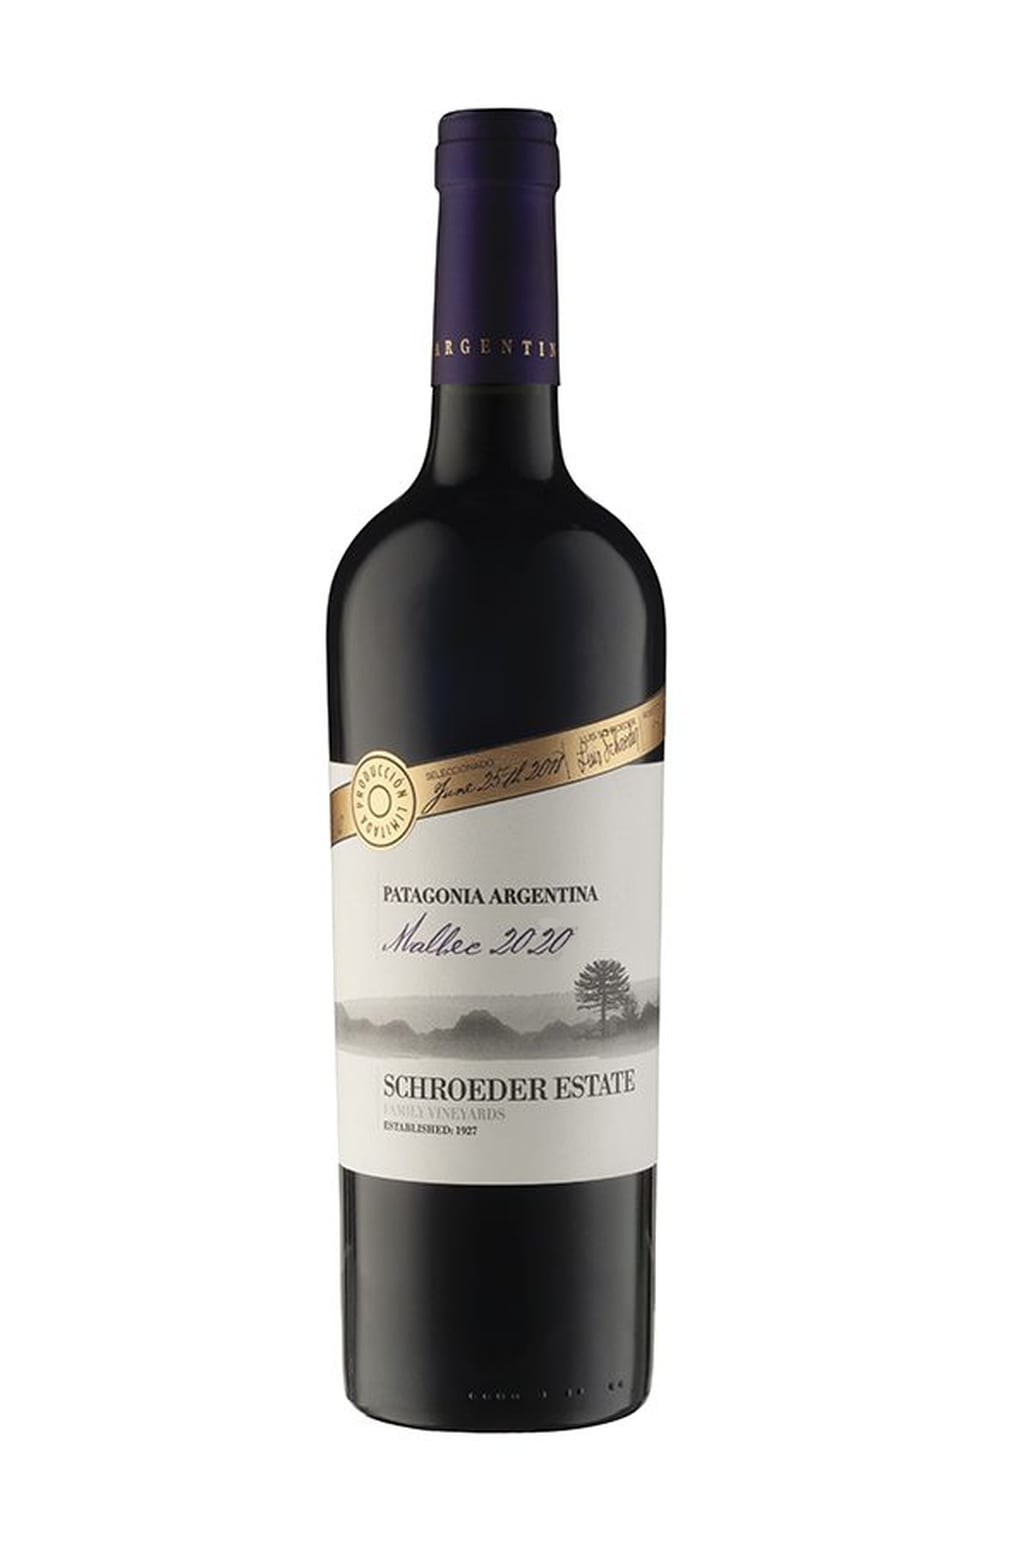 El Schroeder Estate Malbec 2020 es el único vino argentino en el listado asiático. - Gentileza